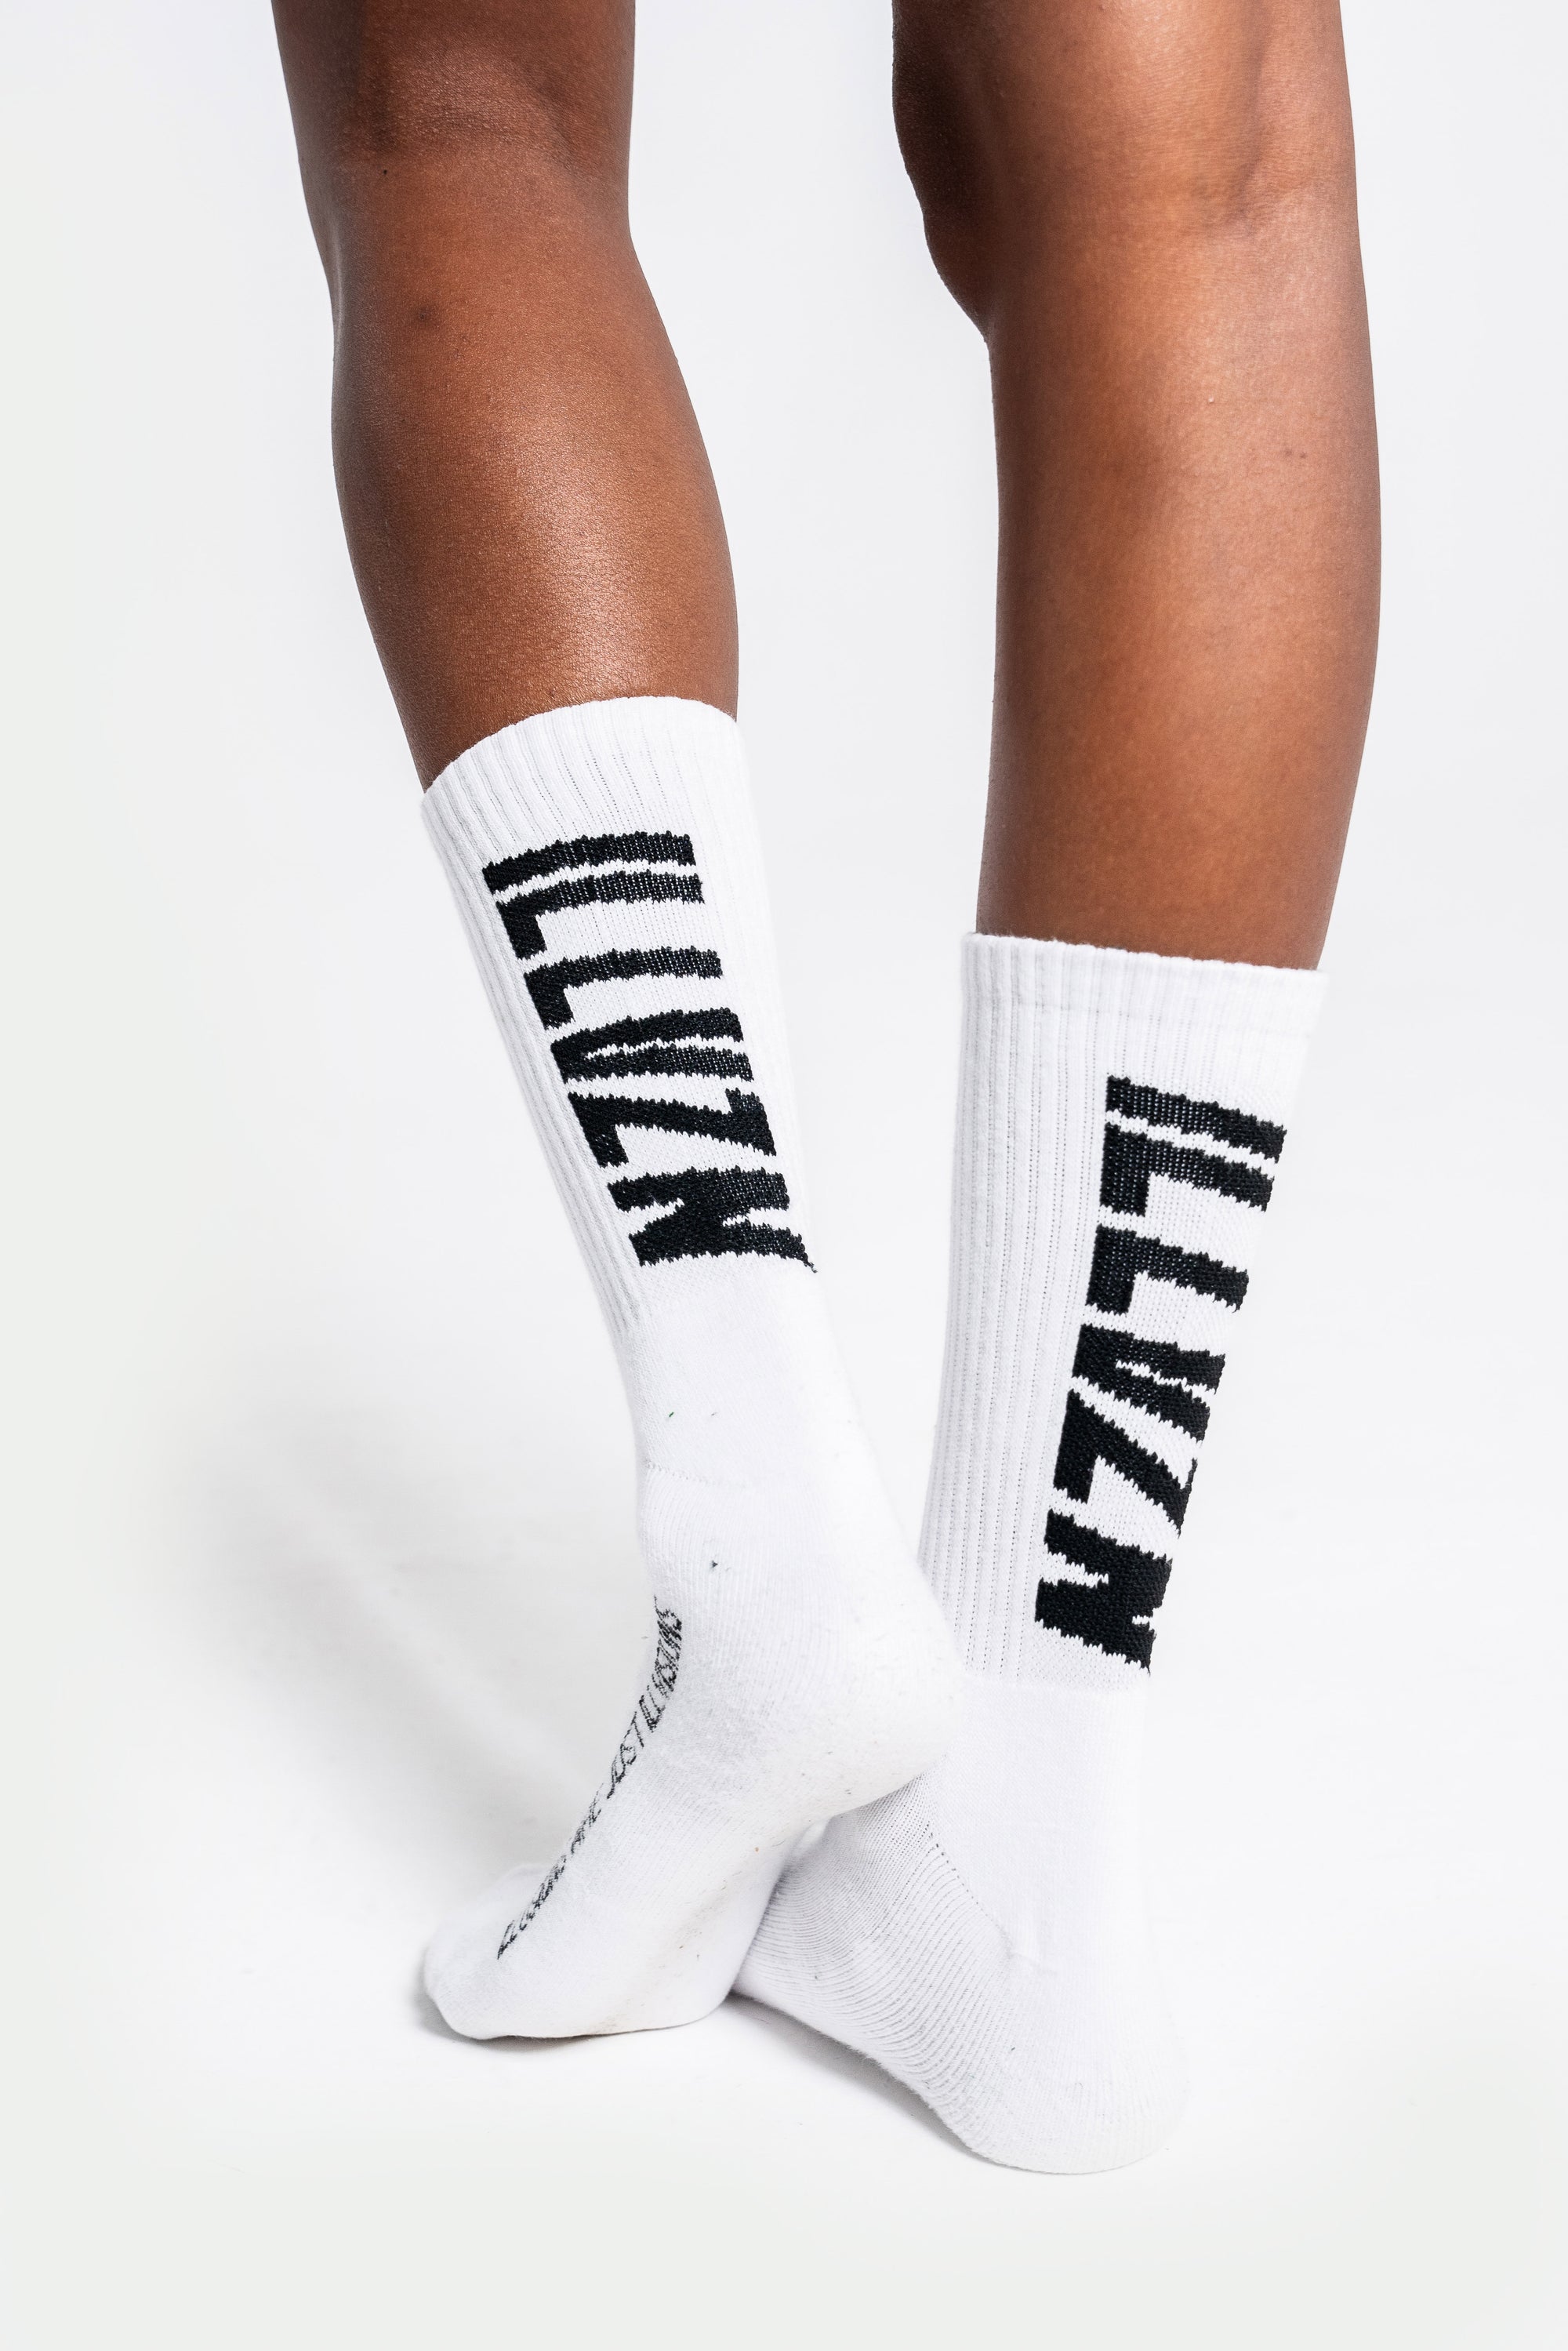 White & Black Socks